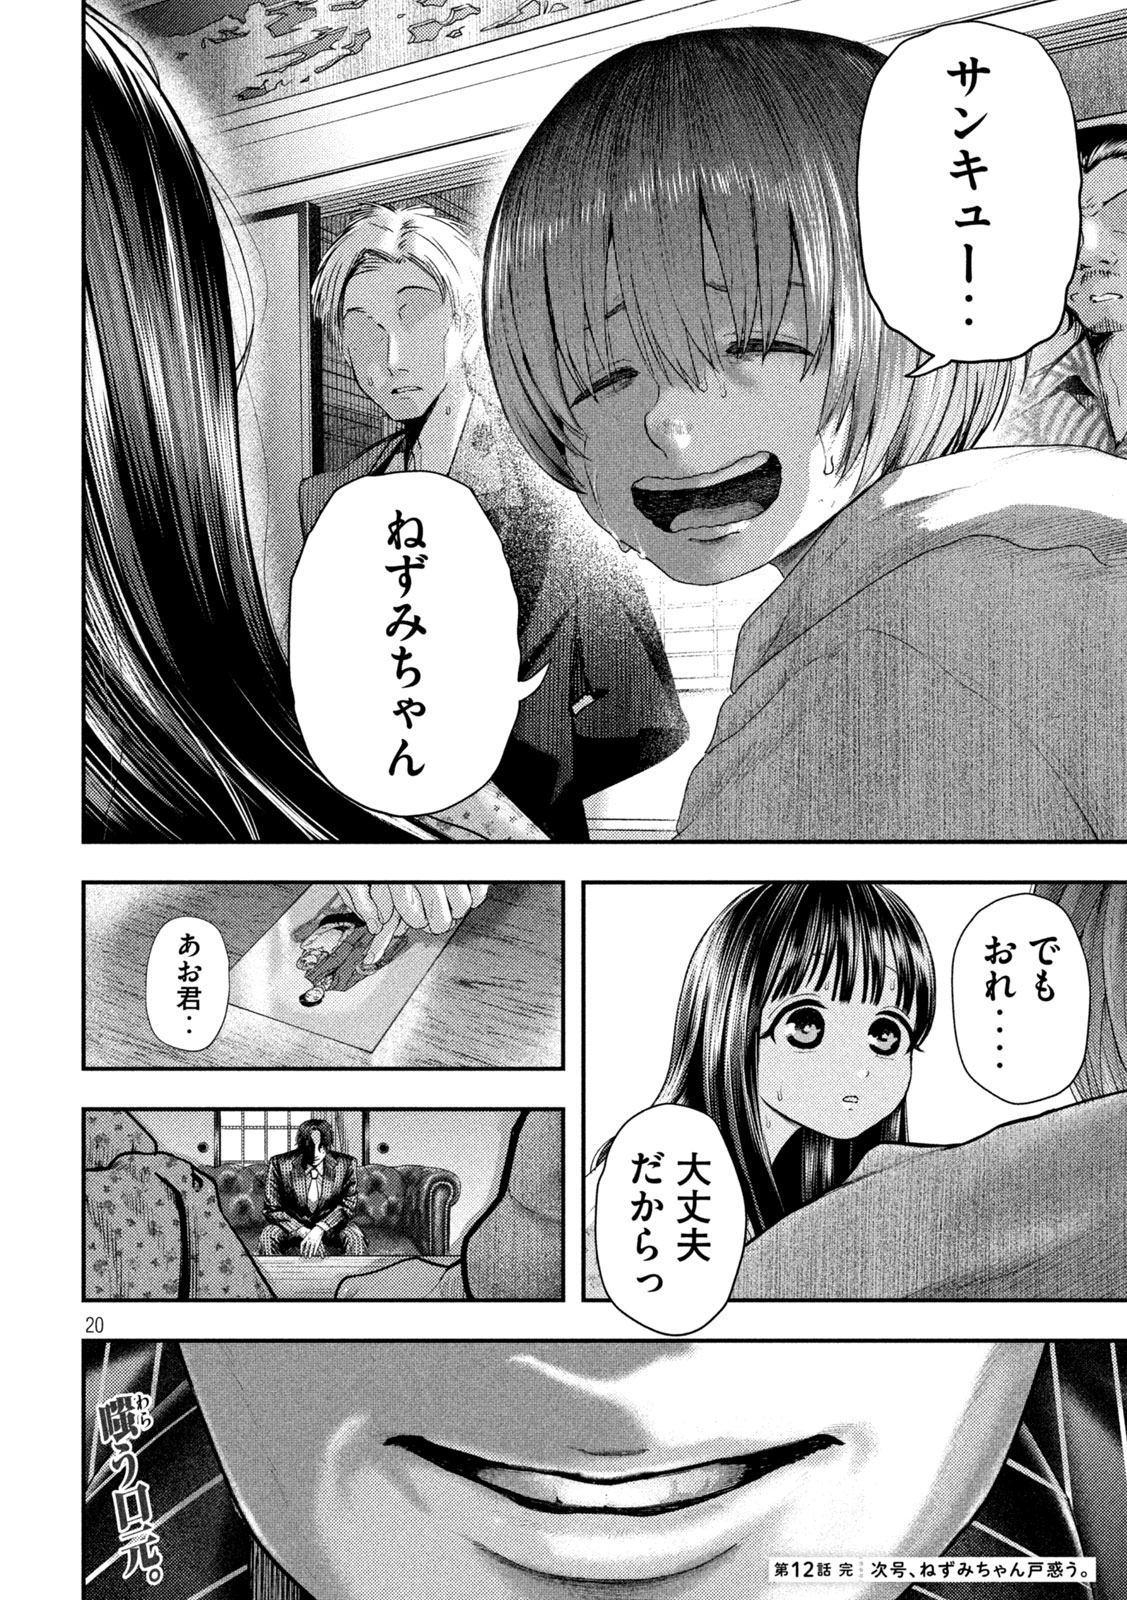 Nezumi no Koi - Chapter 12 - Page 20